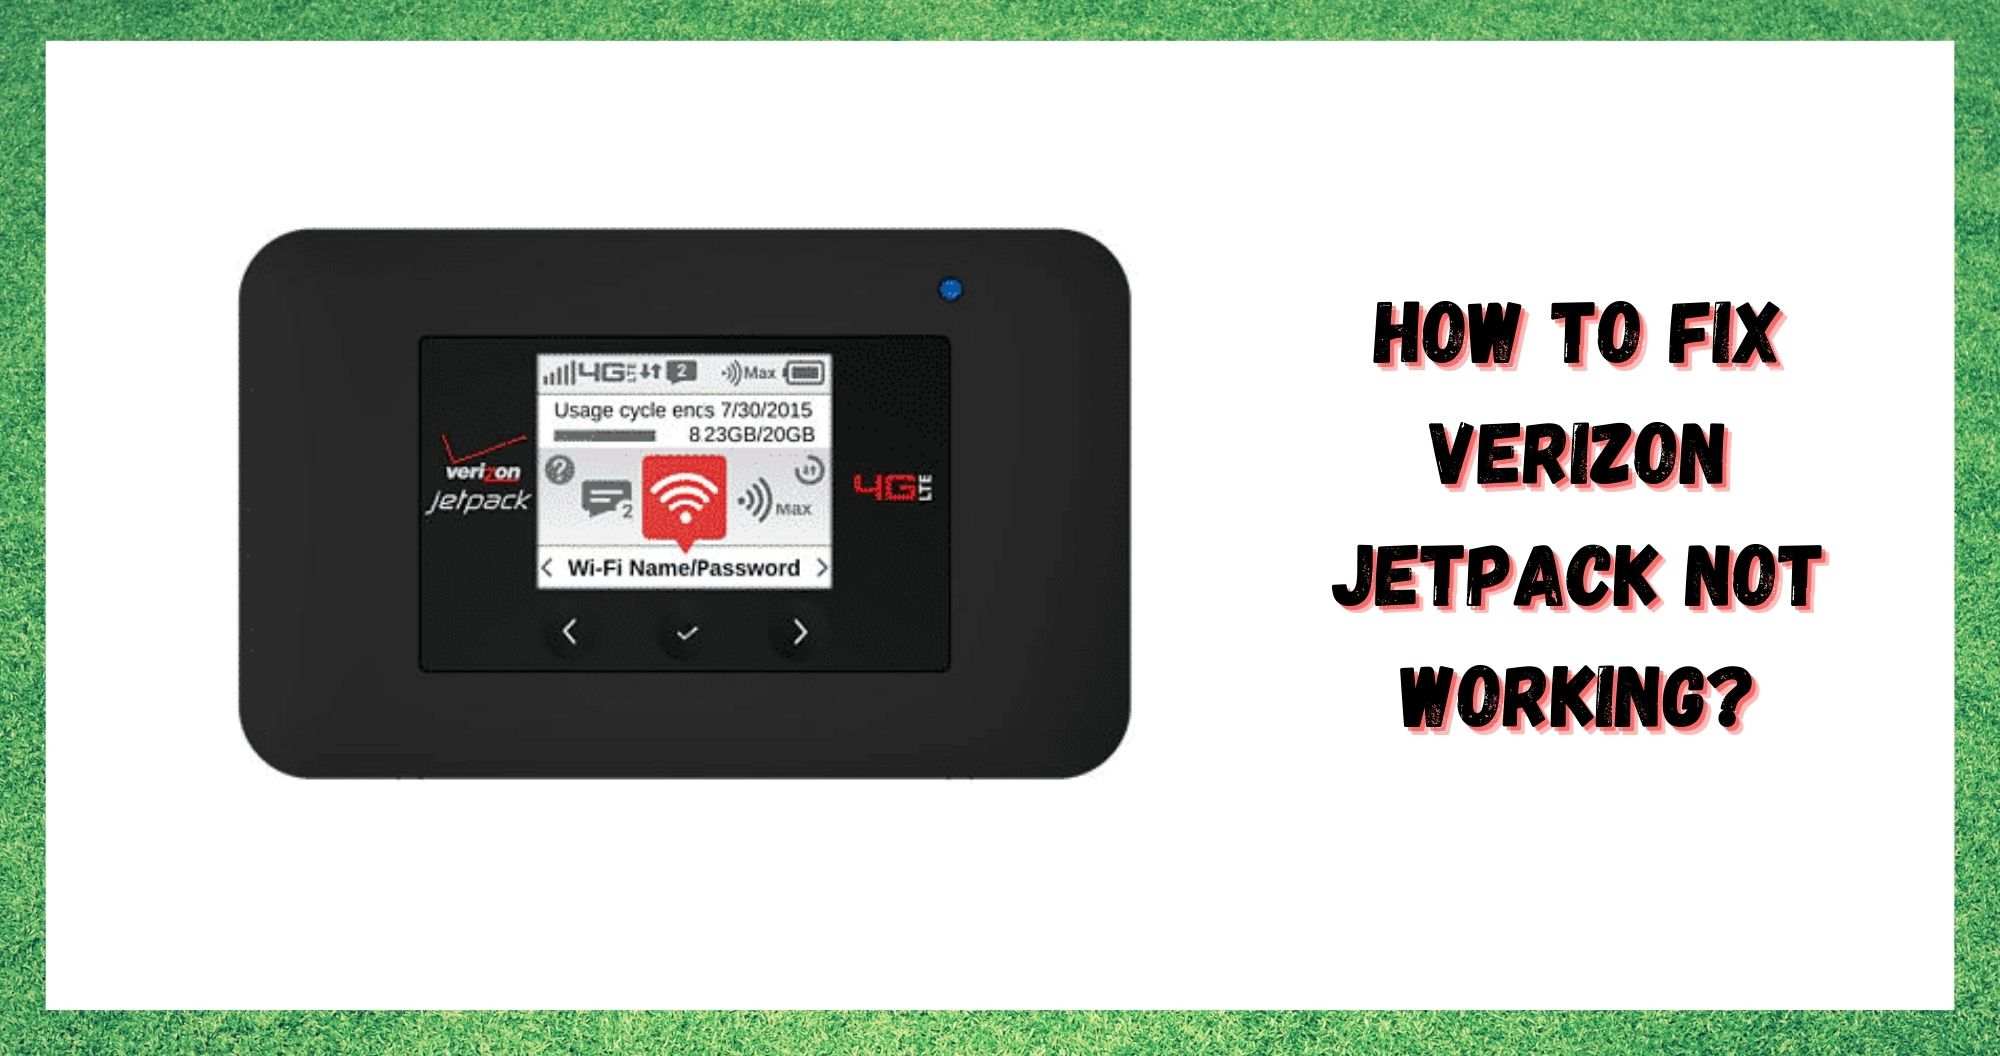 Verizon Jetpack ажиллахгүй байгааг засах 6 арга